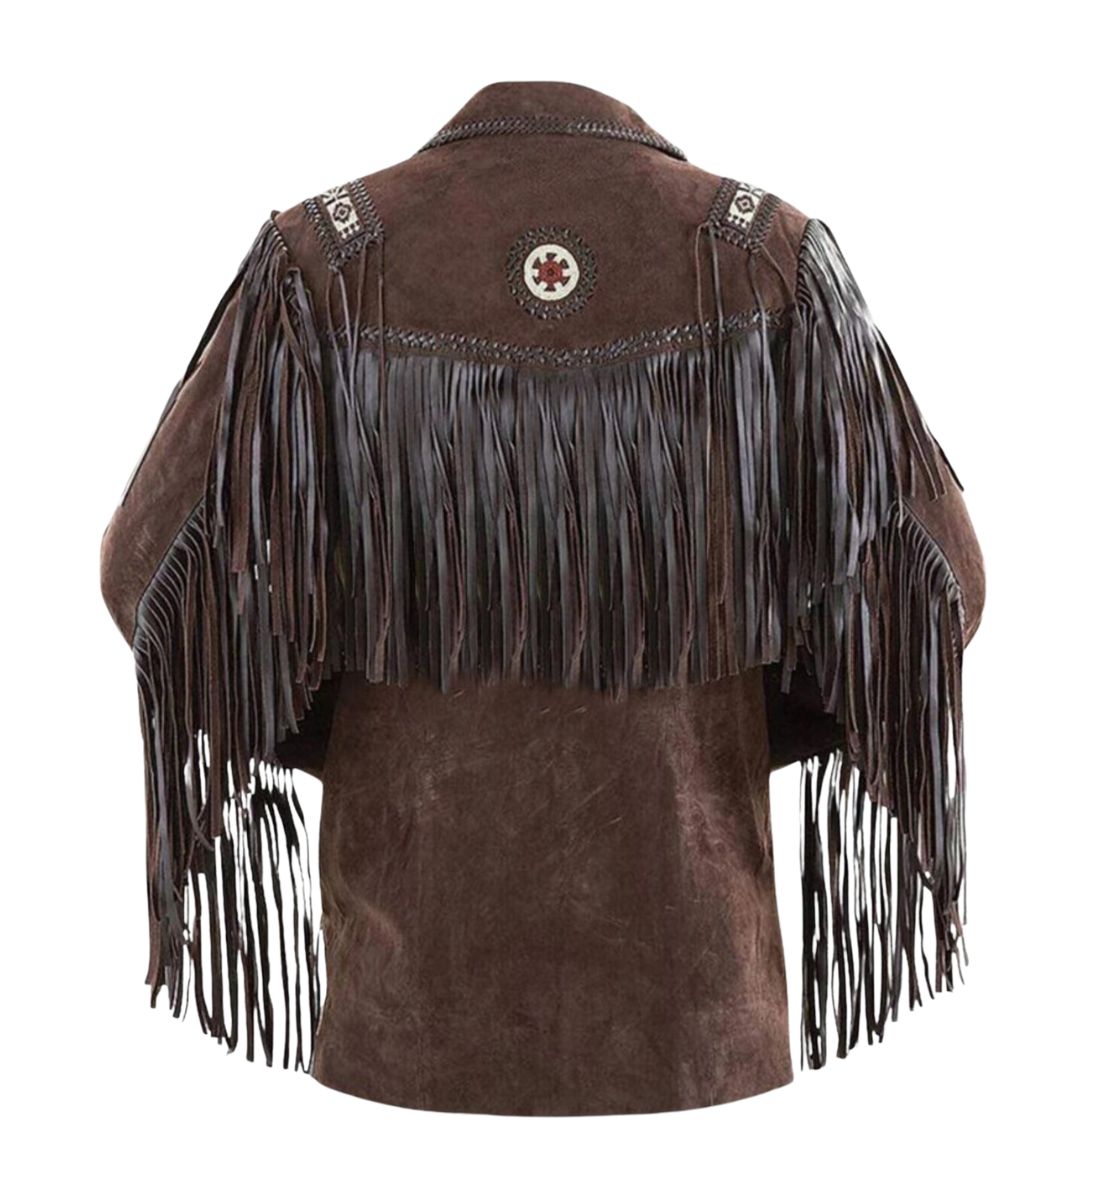 Genuine Brown Suede Leather Fringe Cowboy Coat back -Western Jacket